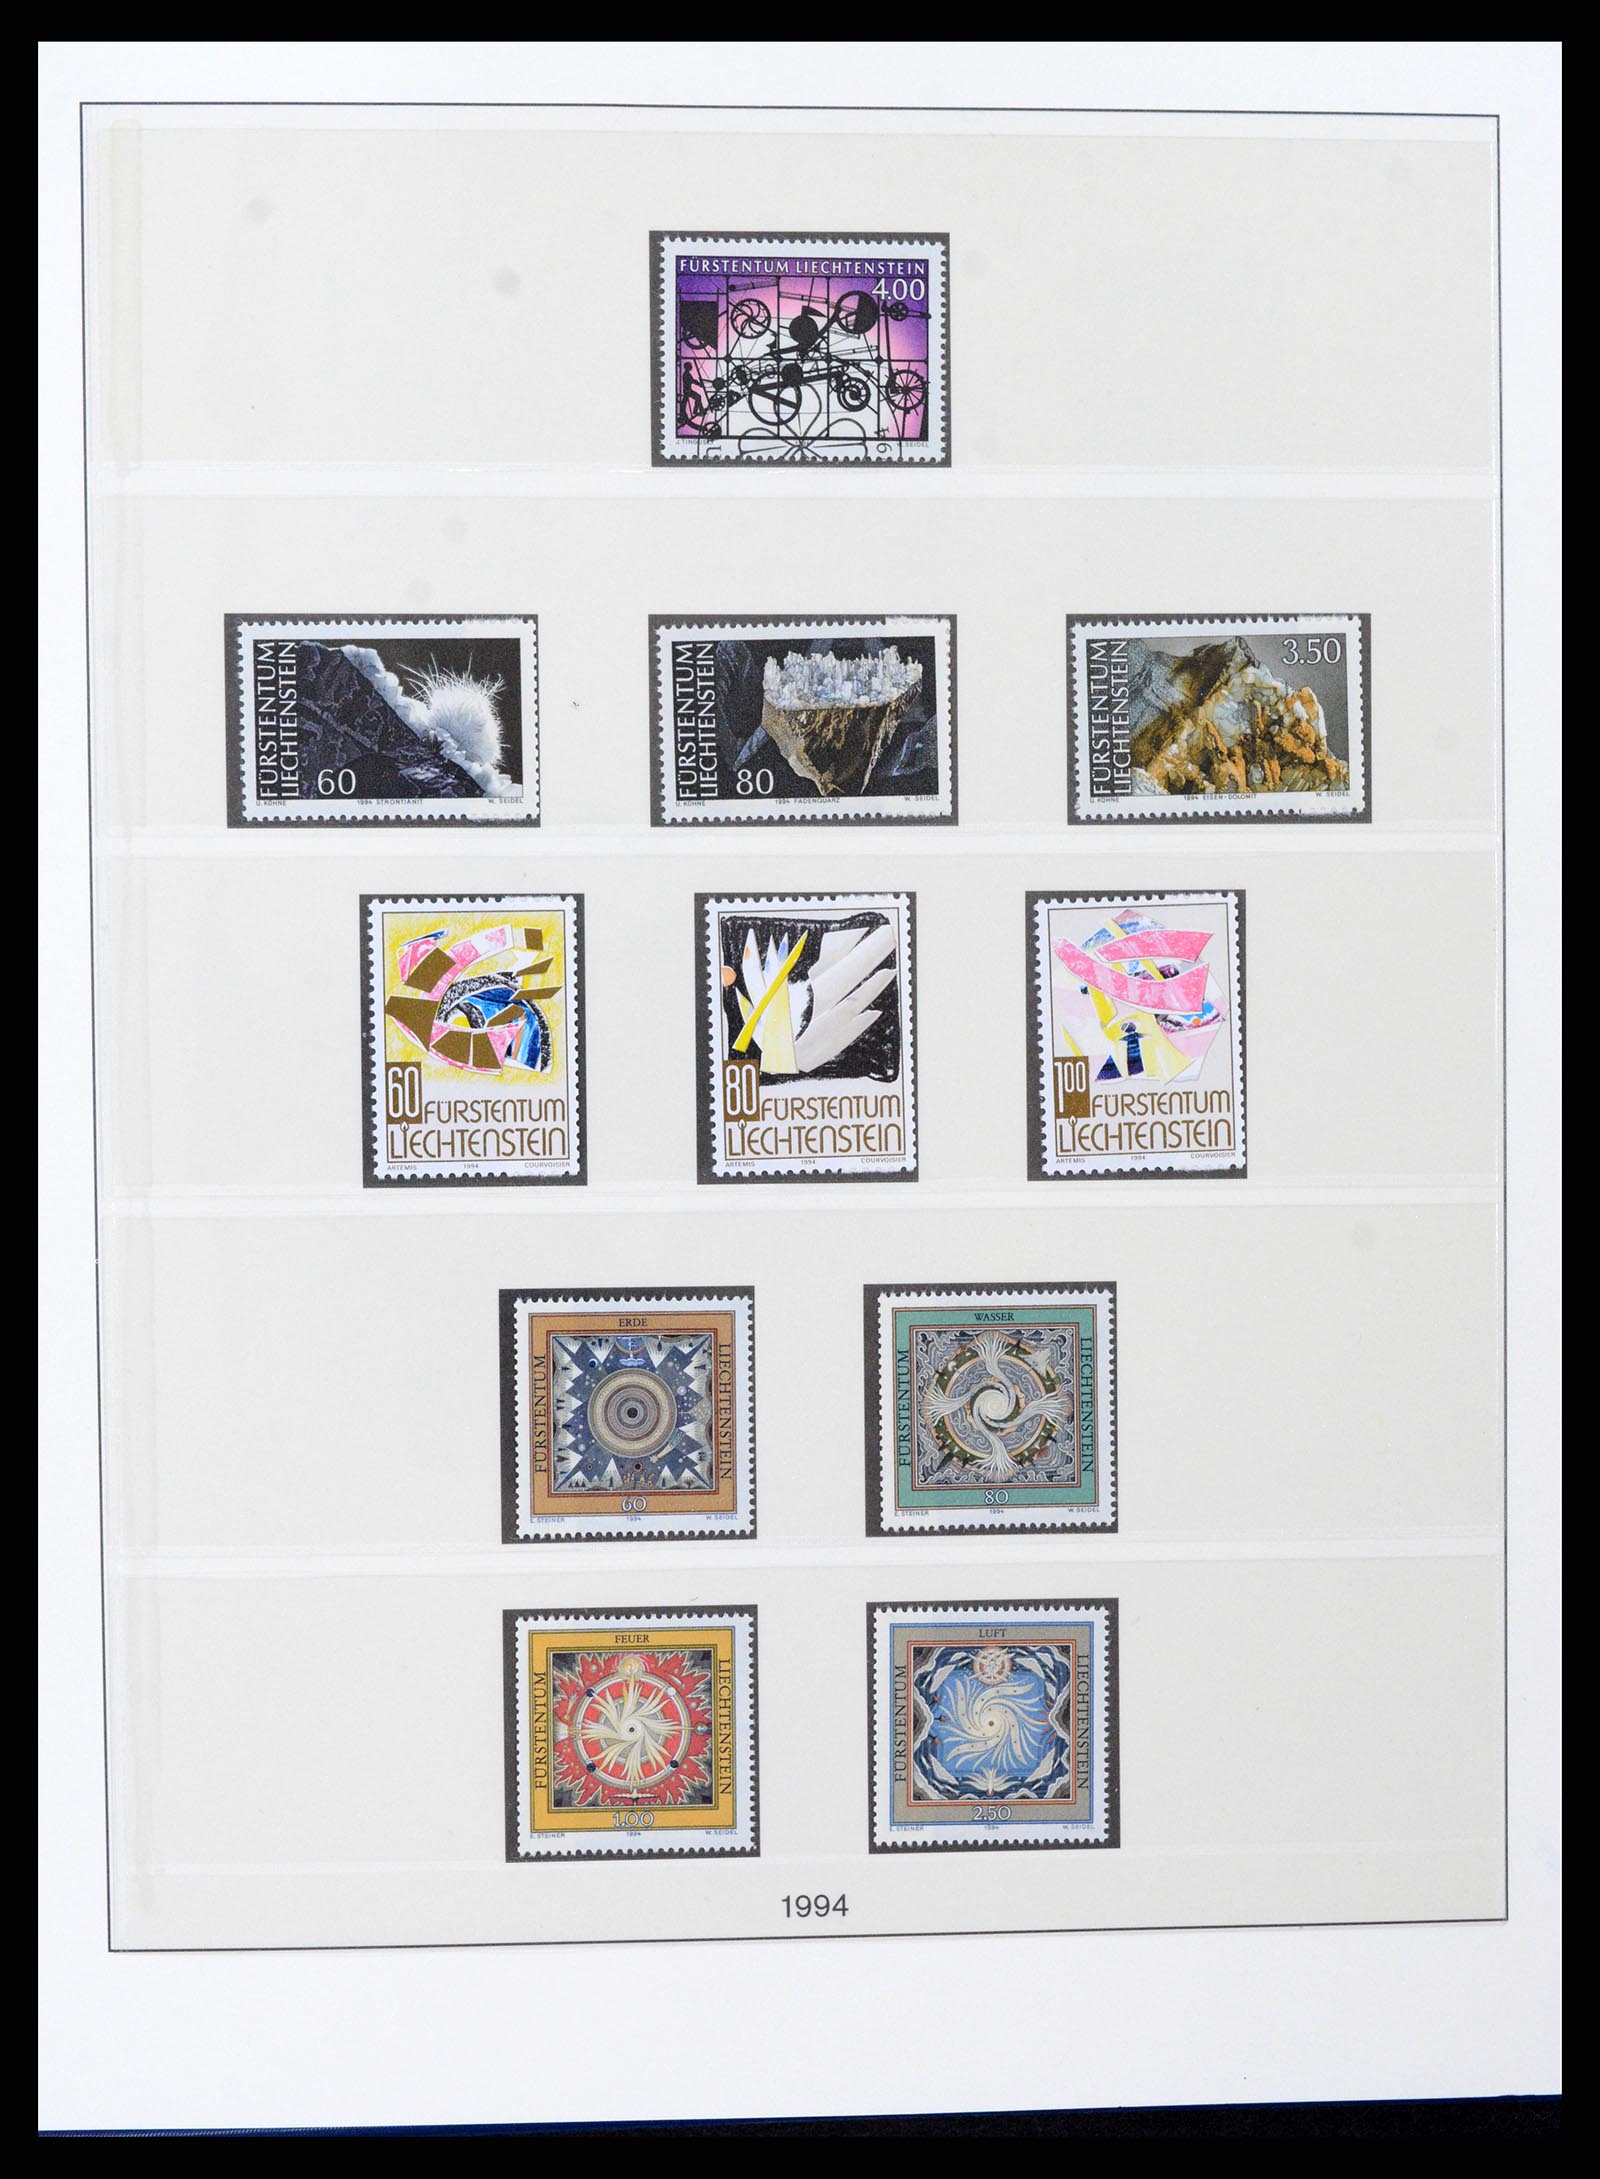 37295 112 - Stamp collection 37295 Liechtenstein 1912-2009.